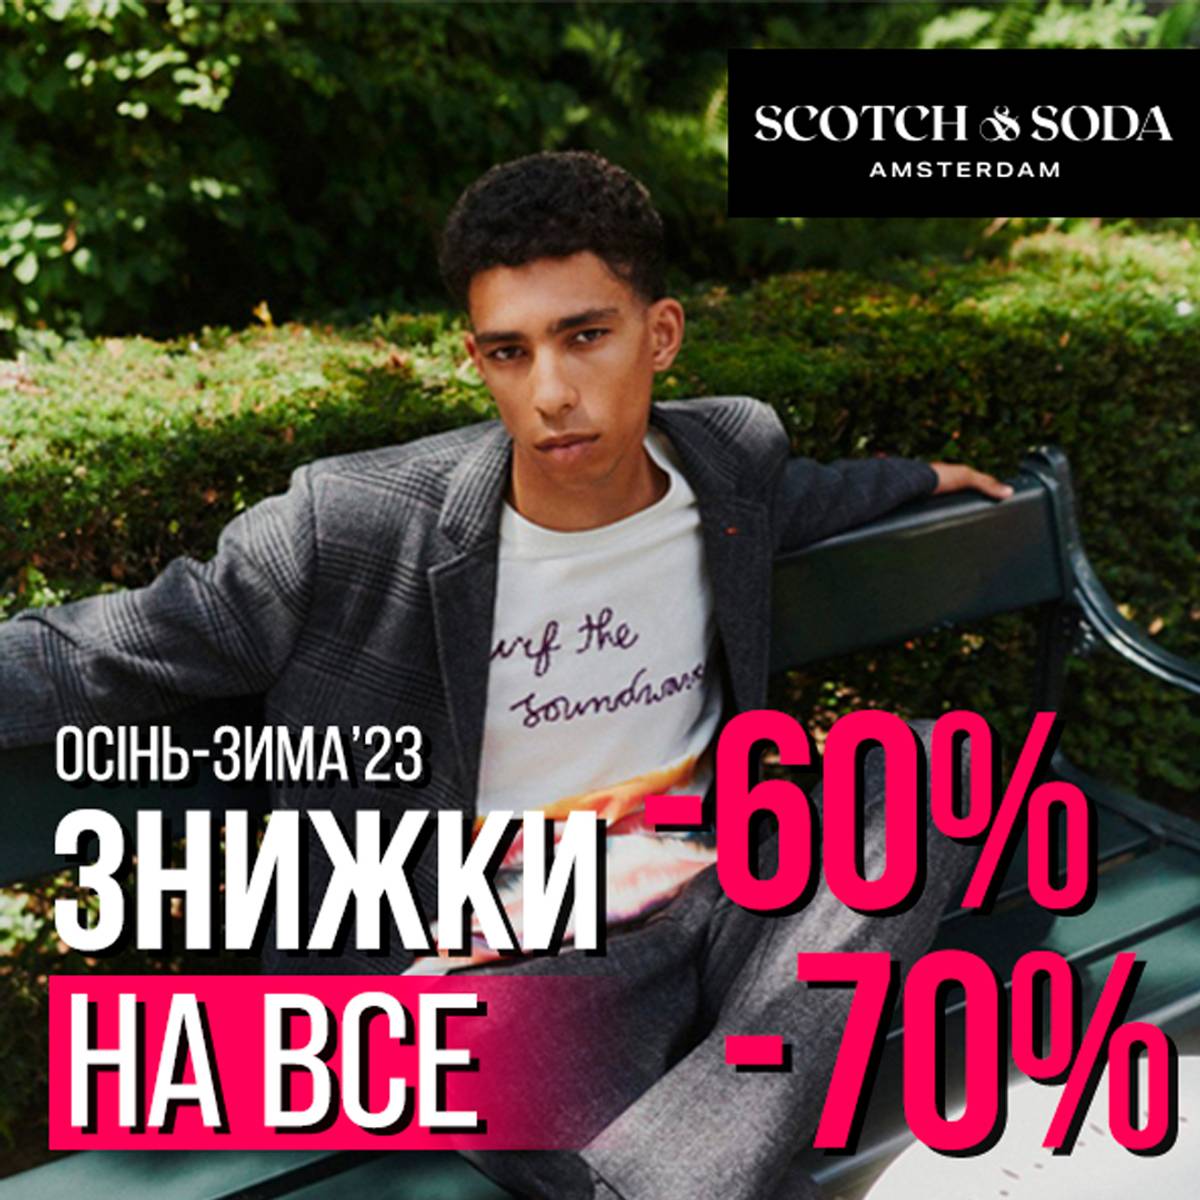 SCOTCH&SODA -60% -70%